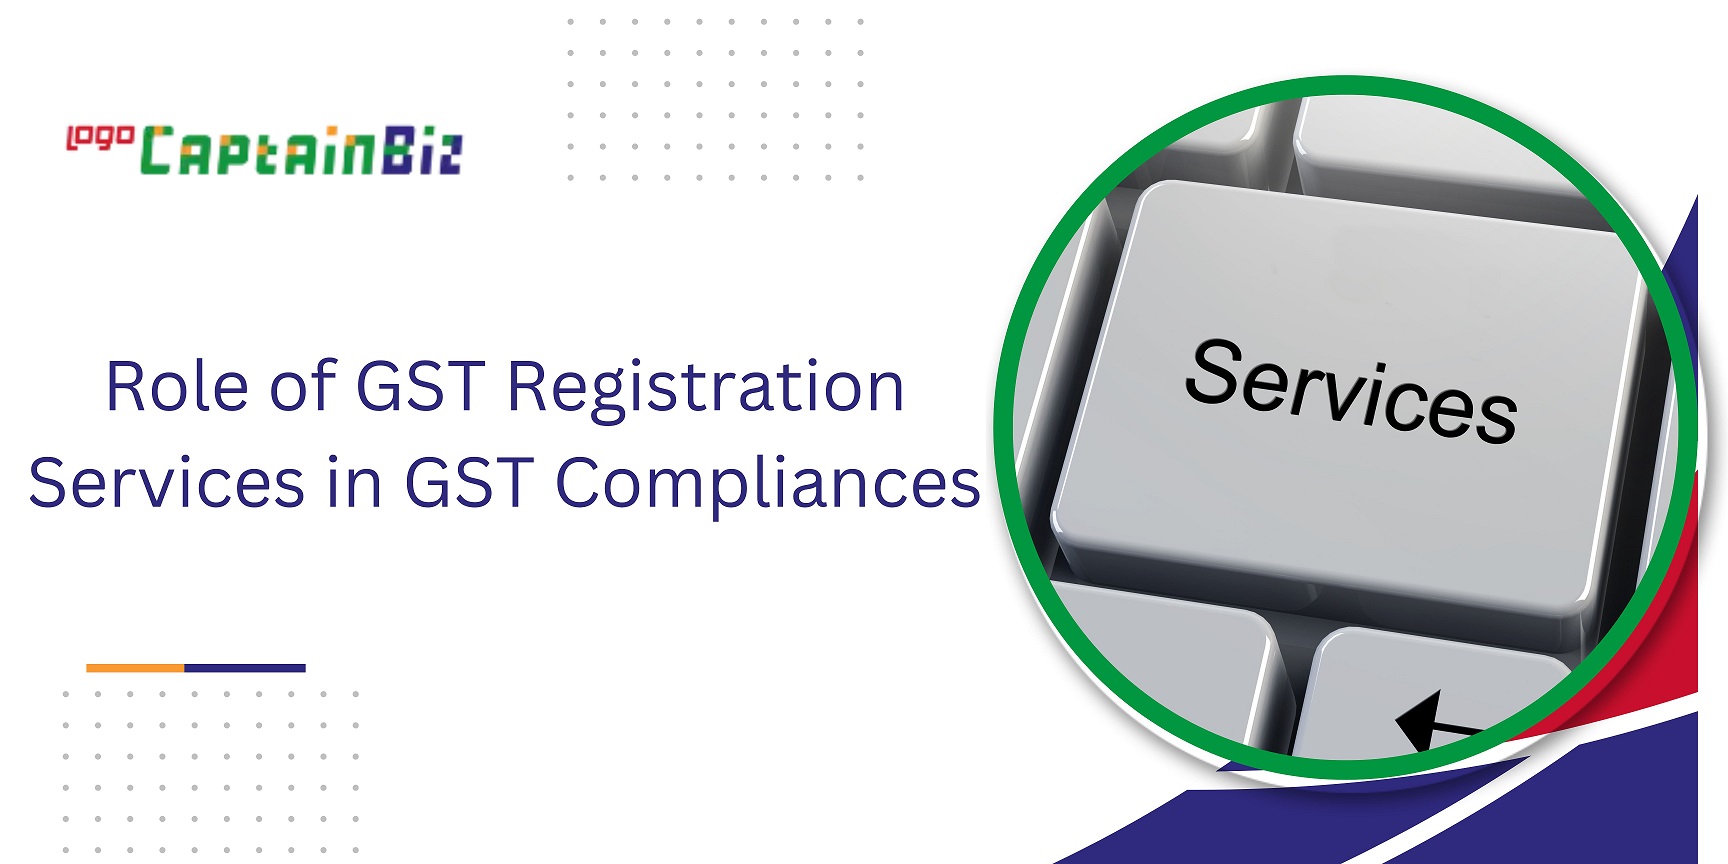 CaptainBiz: Role of GST Registration Services in GST Compliances